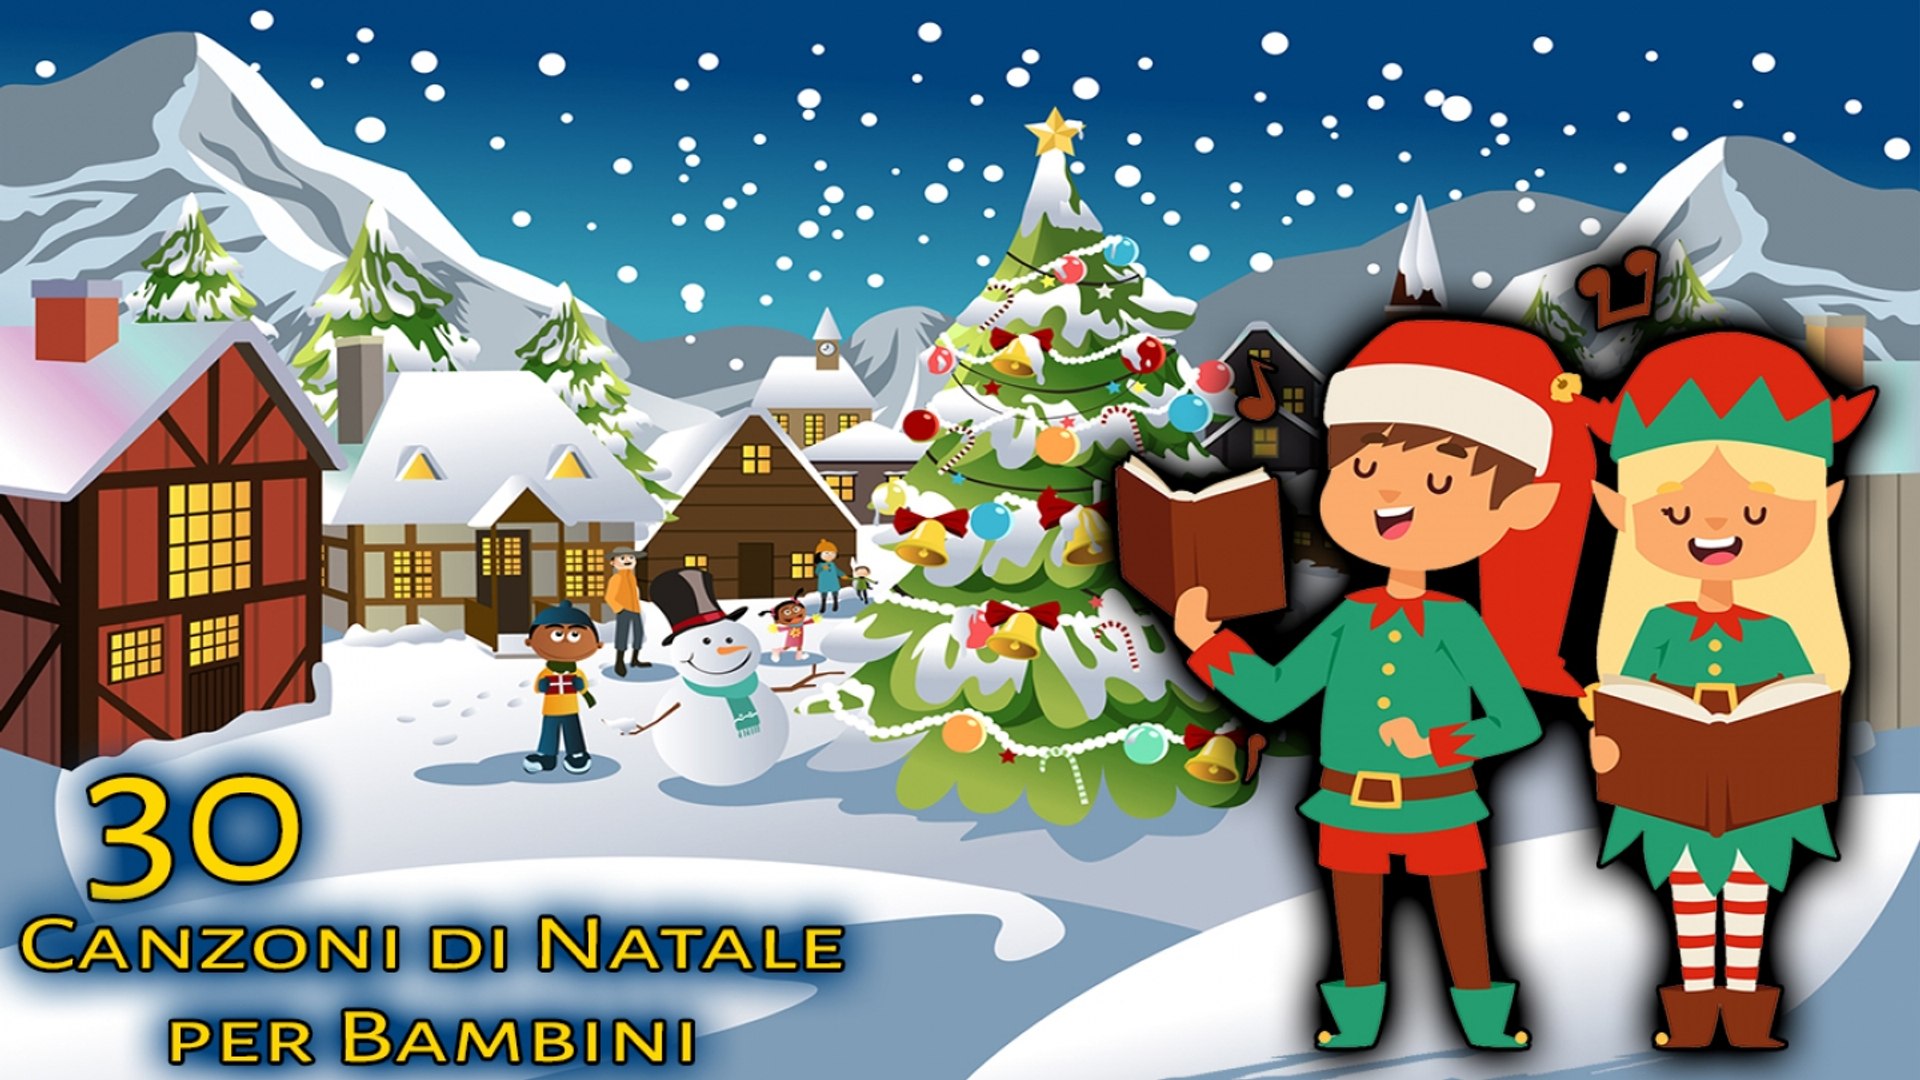 Buon Natale Canzone Per Bambini.Va Top 30 Canzoni Di Natale Per Bambini Canzoni Per Bambini Video Dailymotion